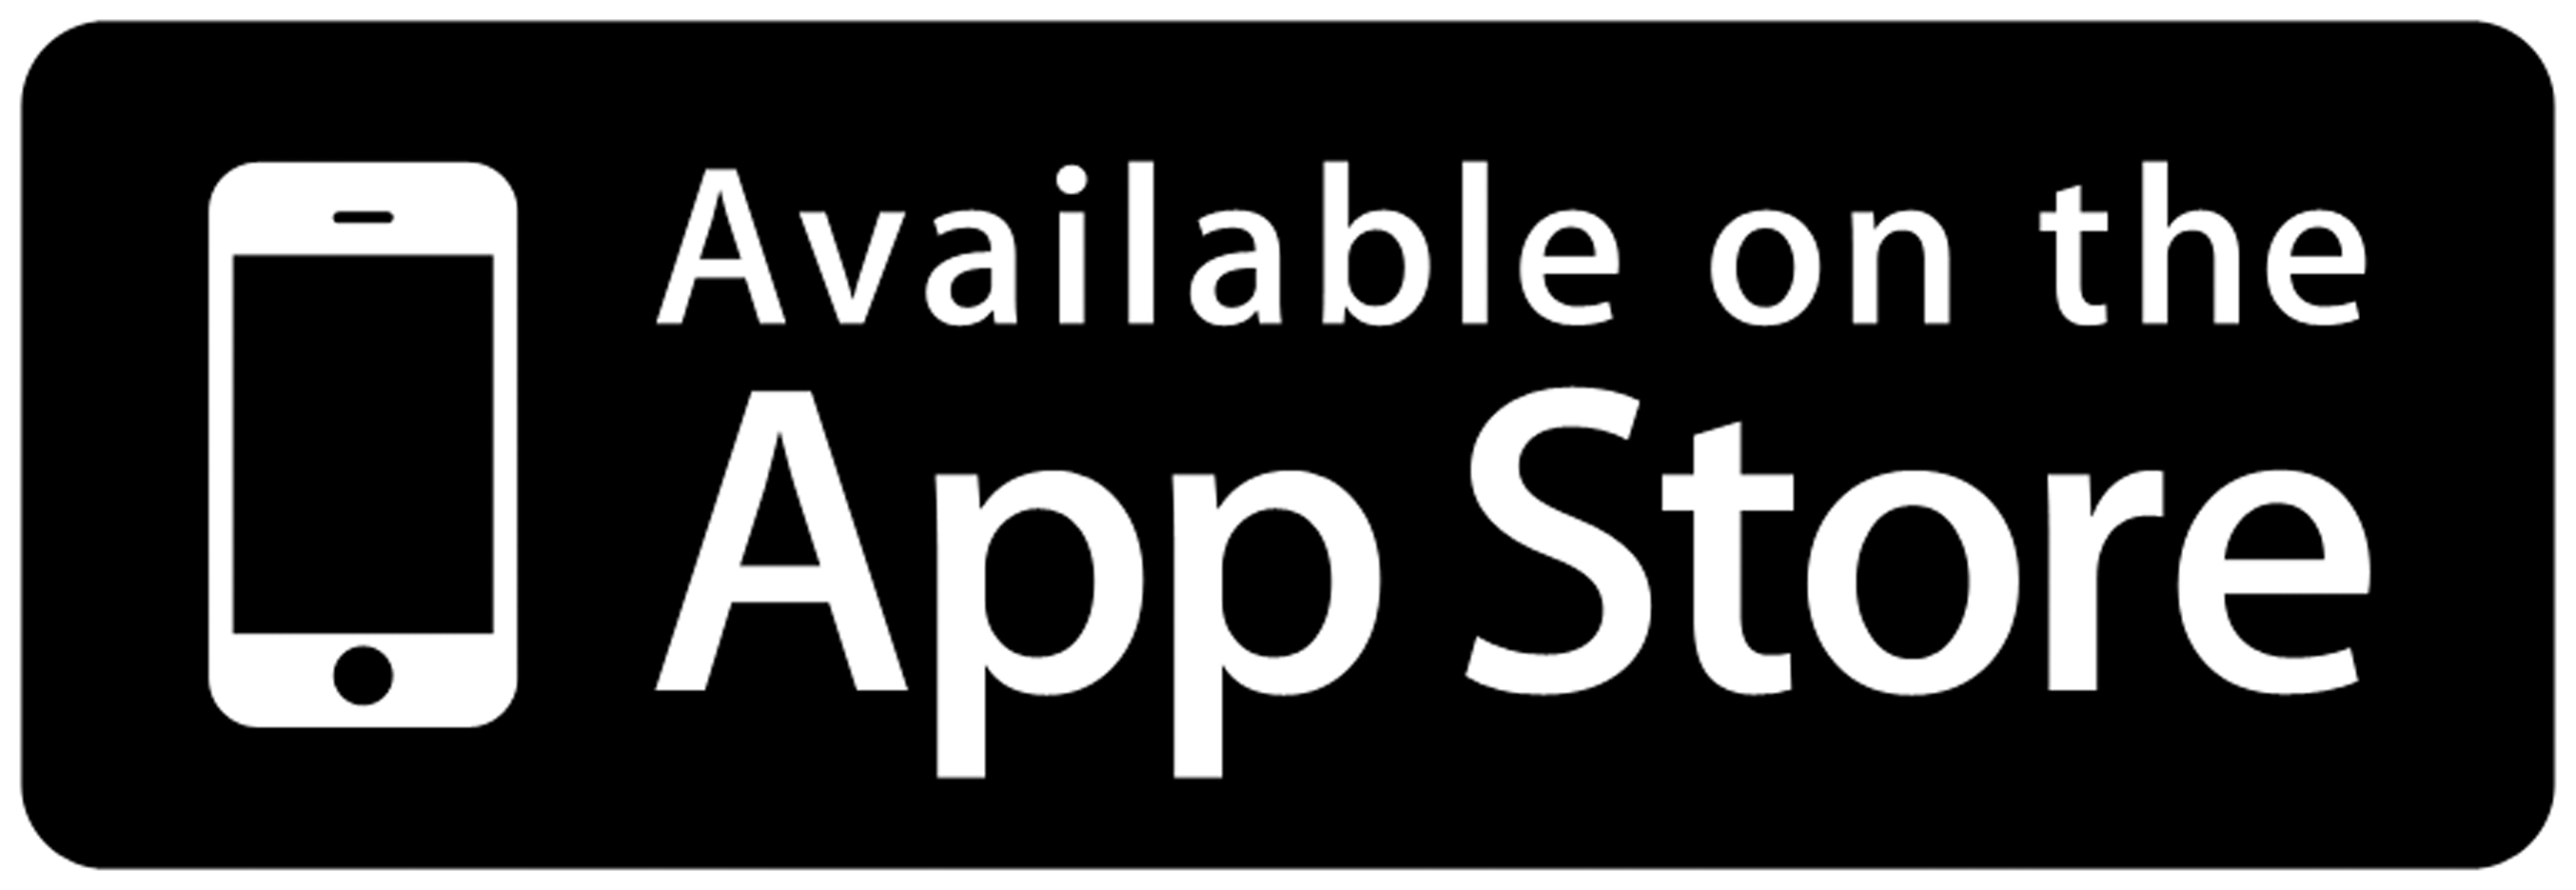 app_store_icon-1